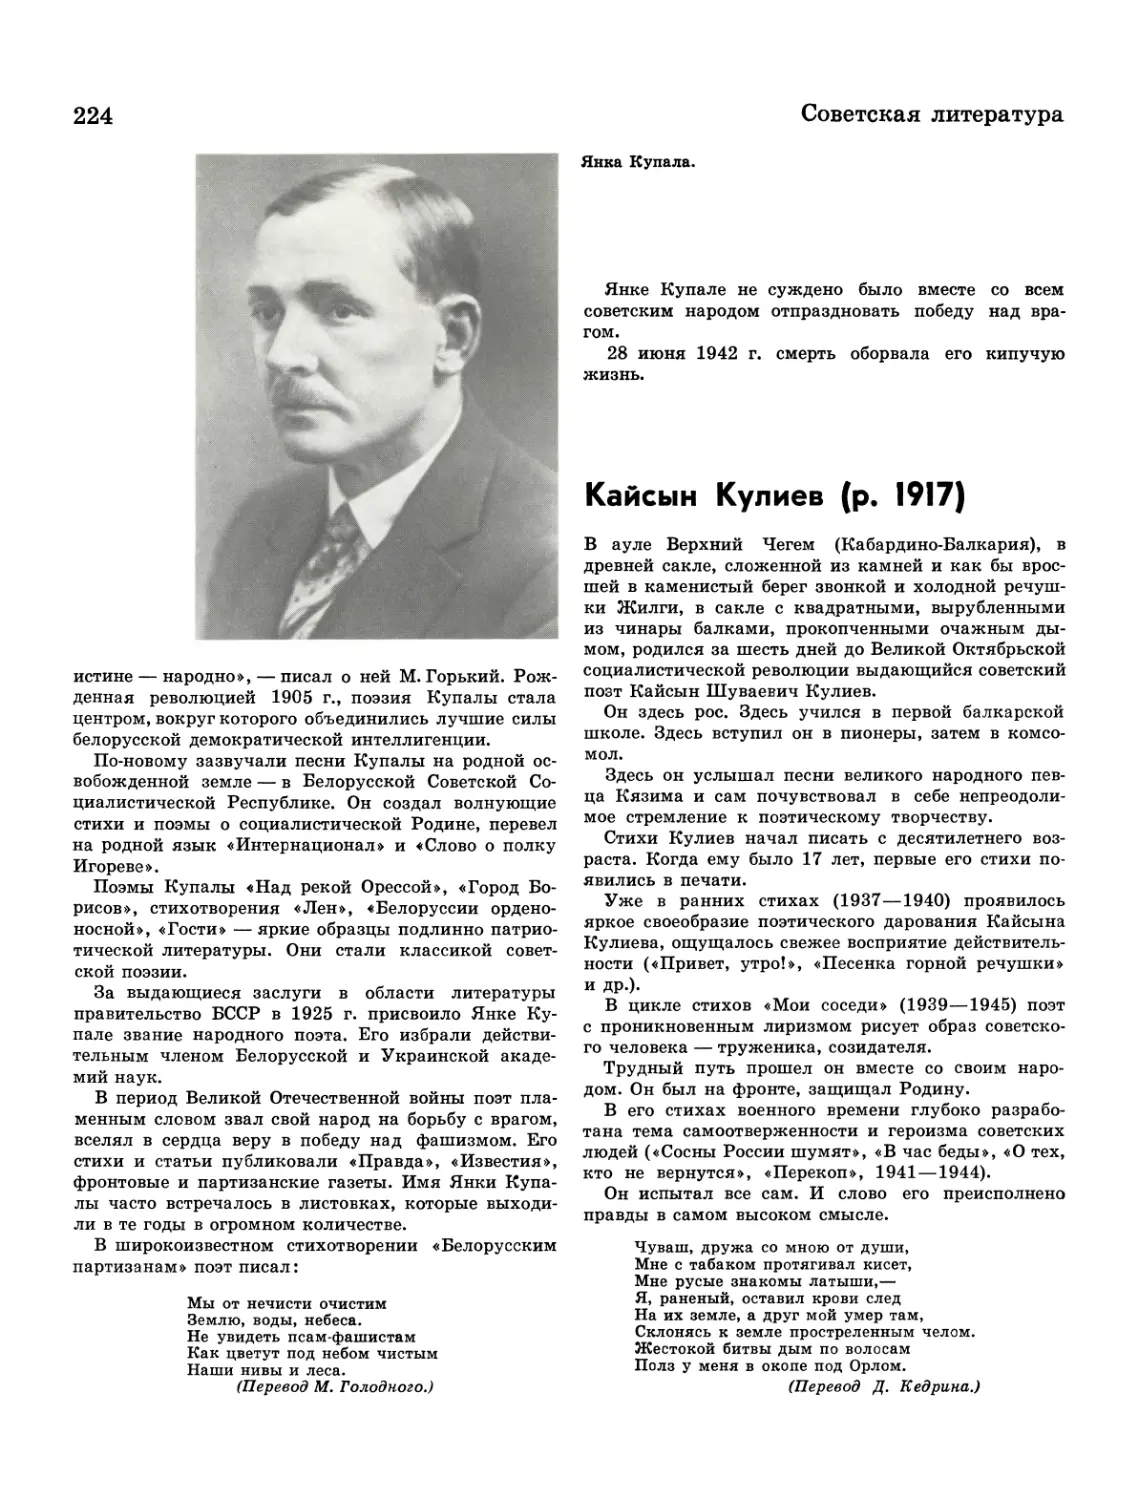 Кайсын Кулиев